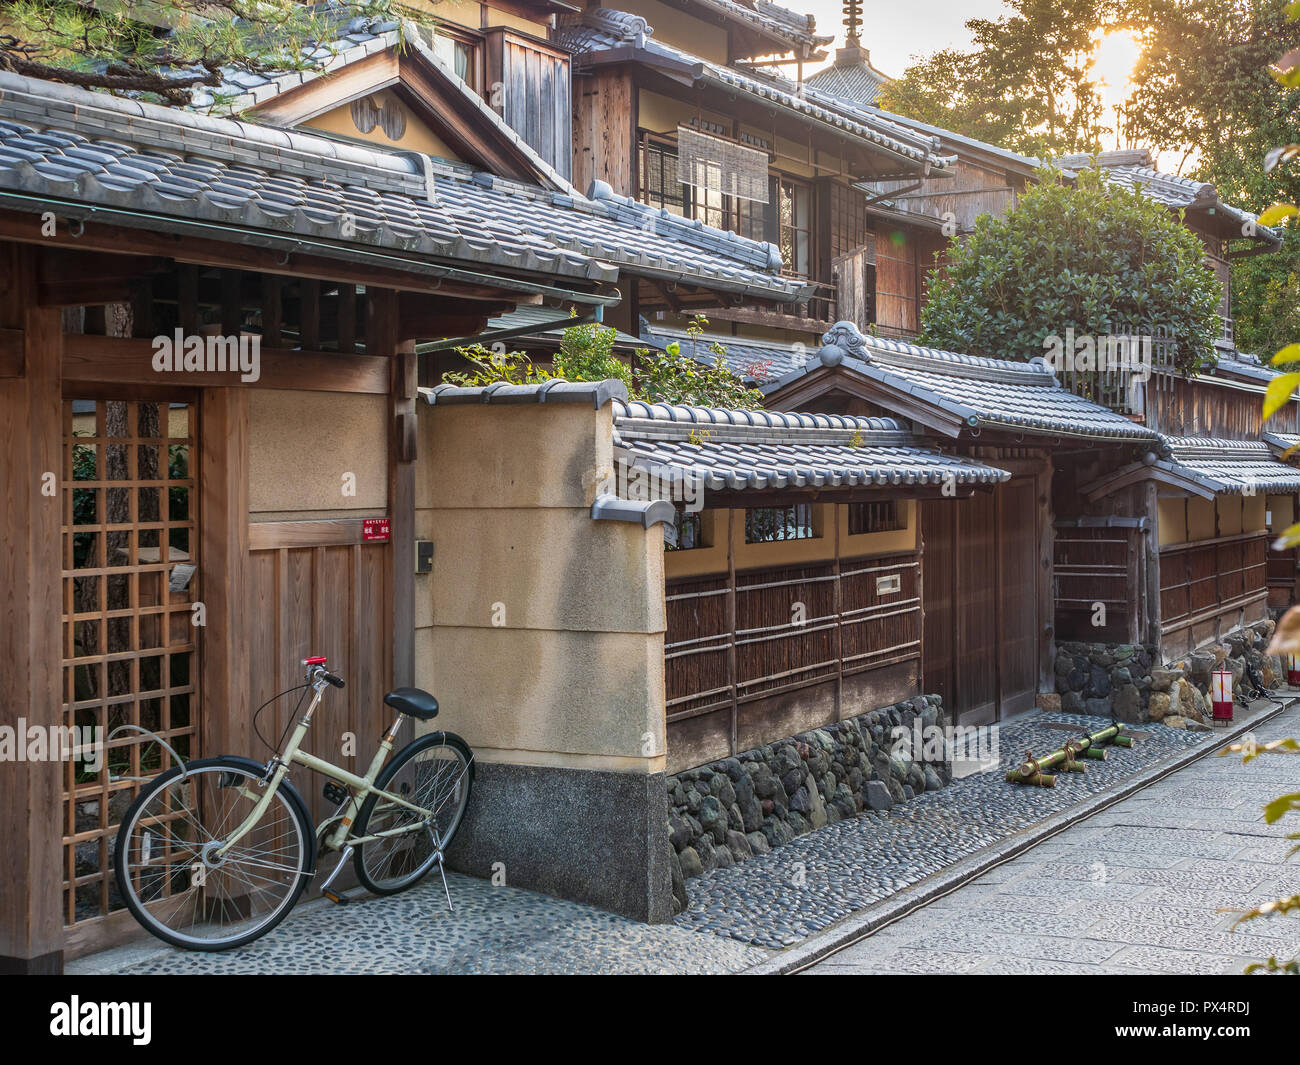 Maison de Kyoto - maison de style traditionnel japonais dans la ville de Kyoto au Japon Banque D'Images